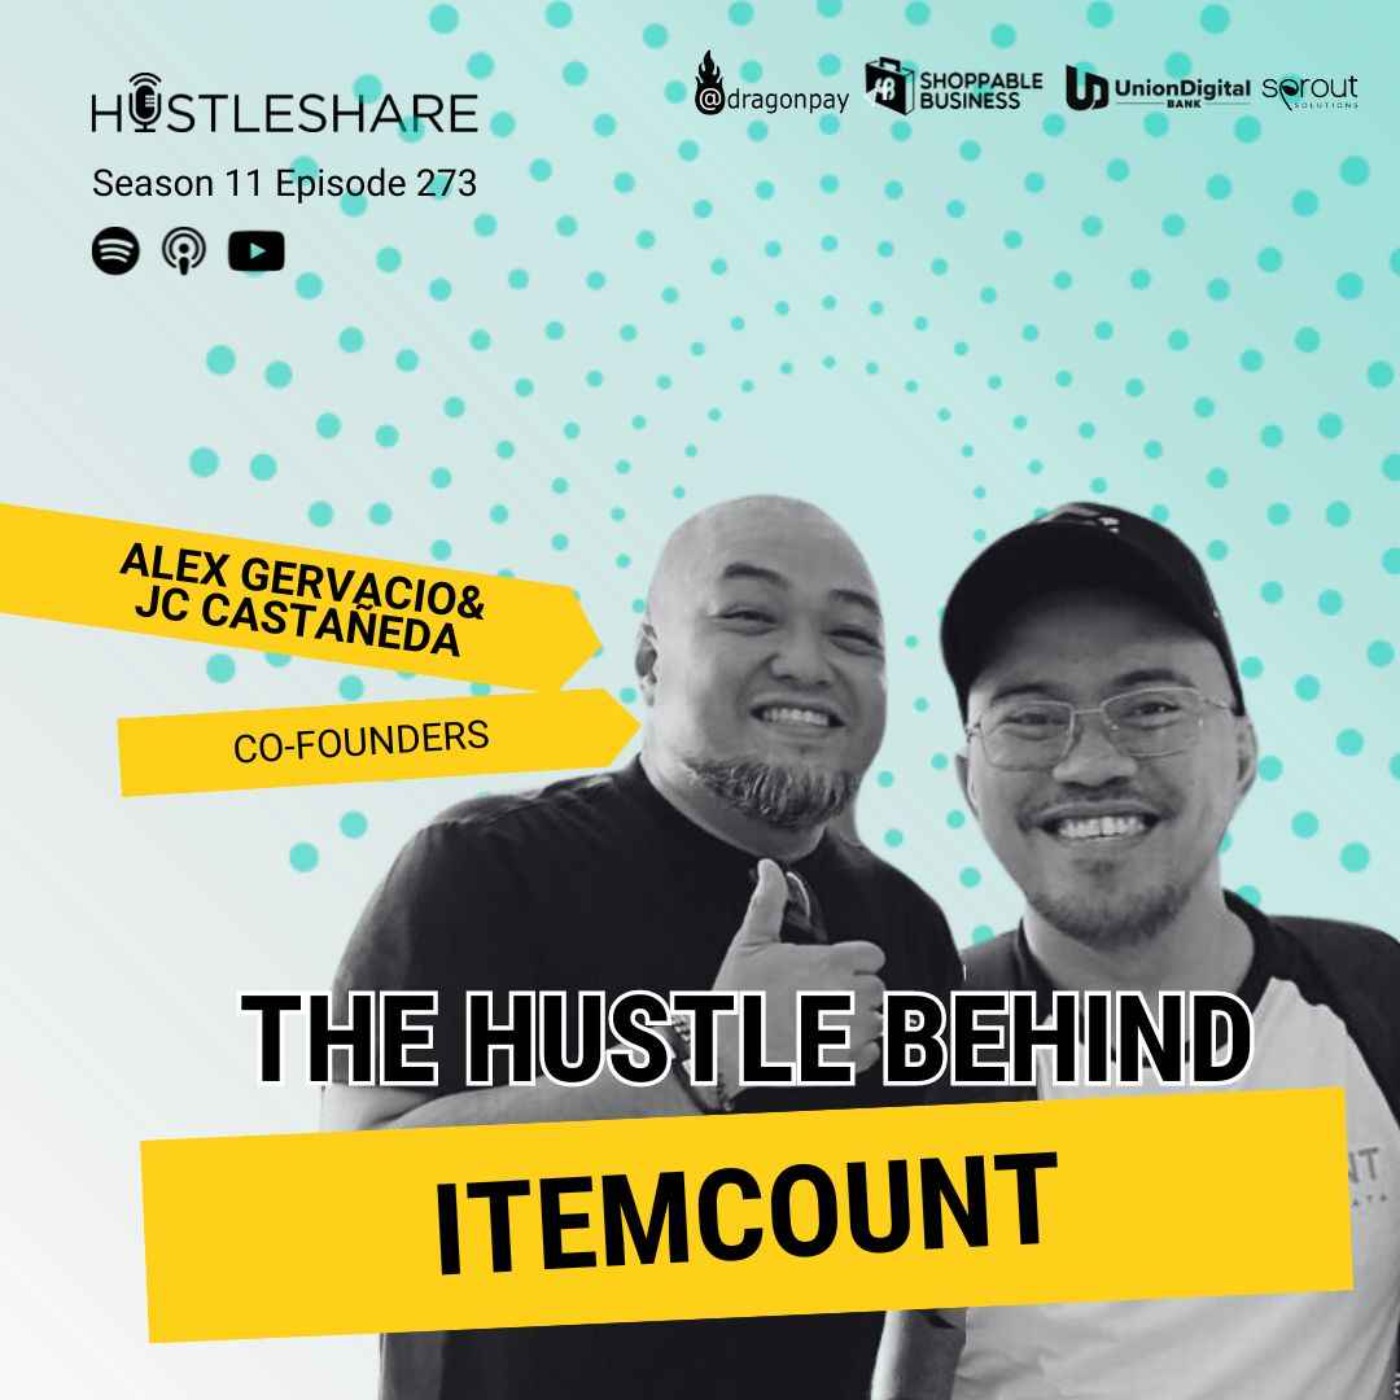 JC Castañeda and Alex Gervacio - The Hustle Behind Itemcount